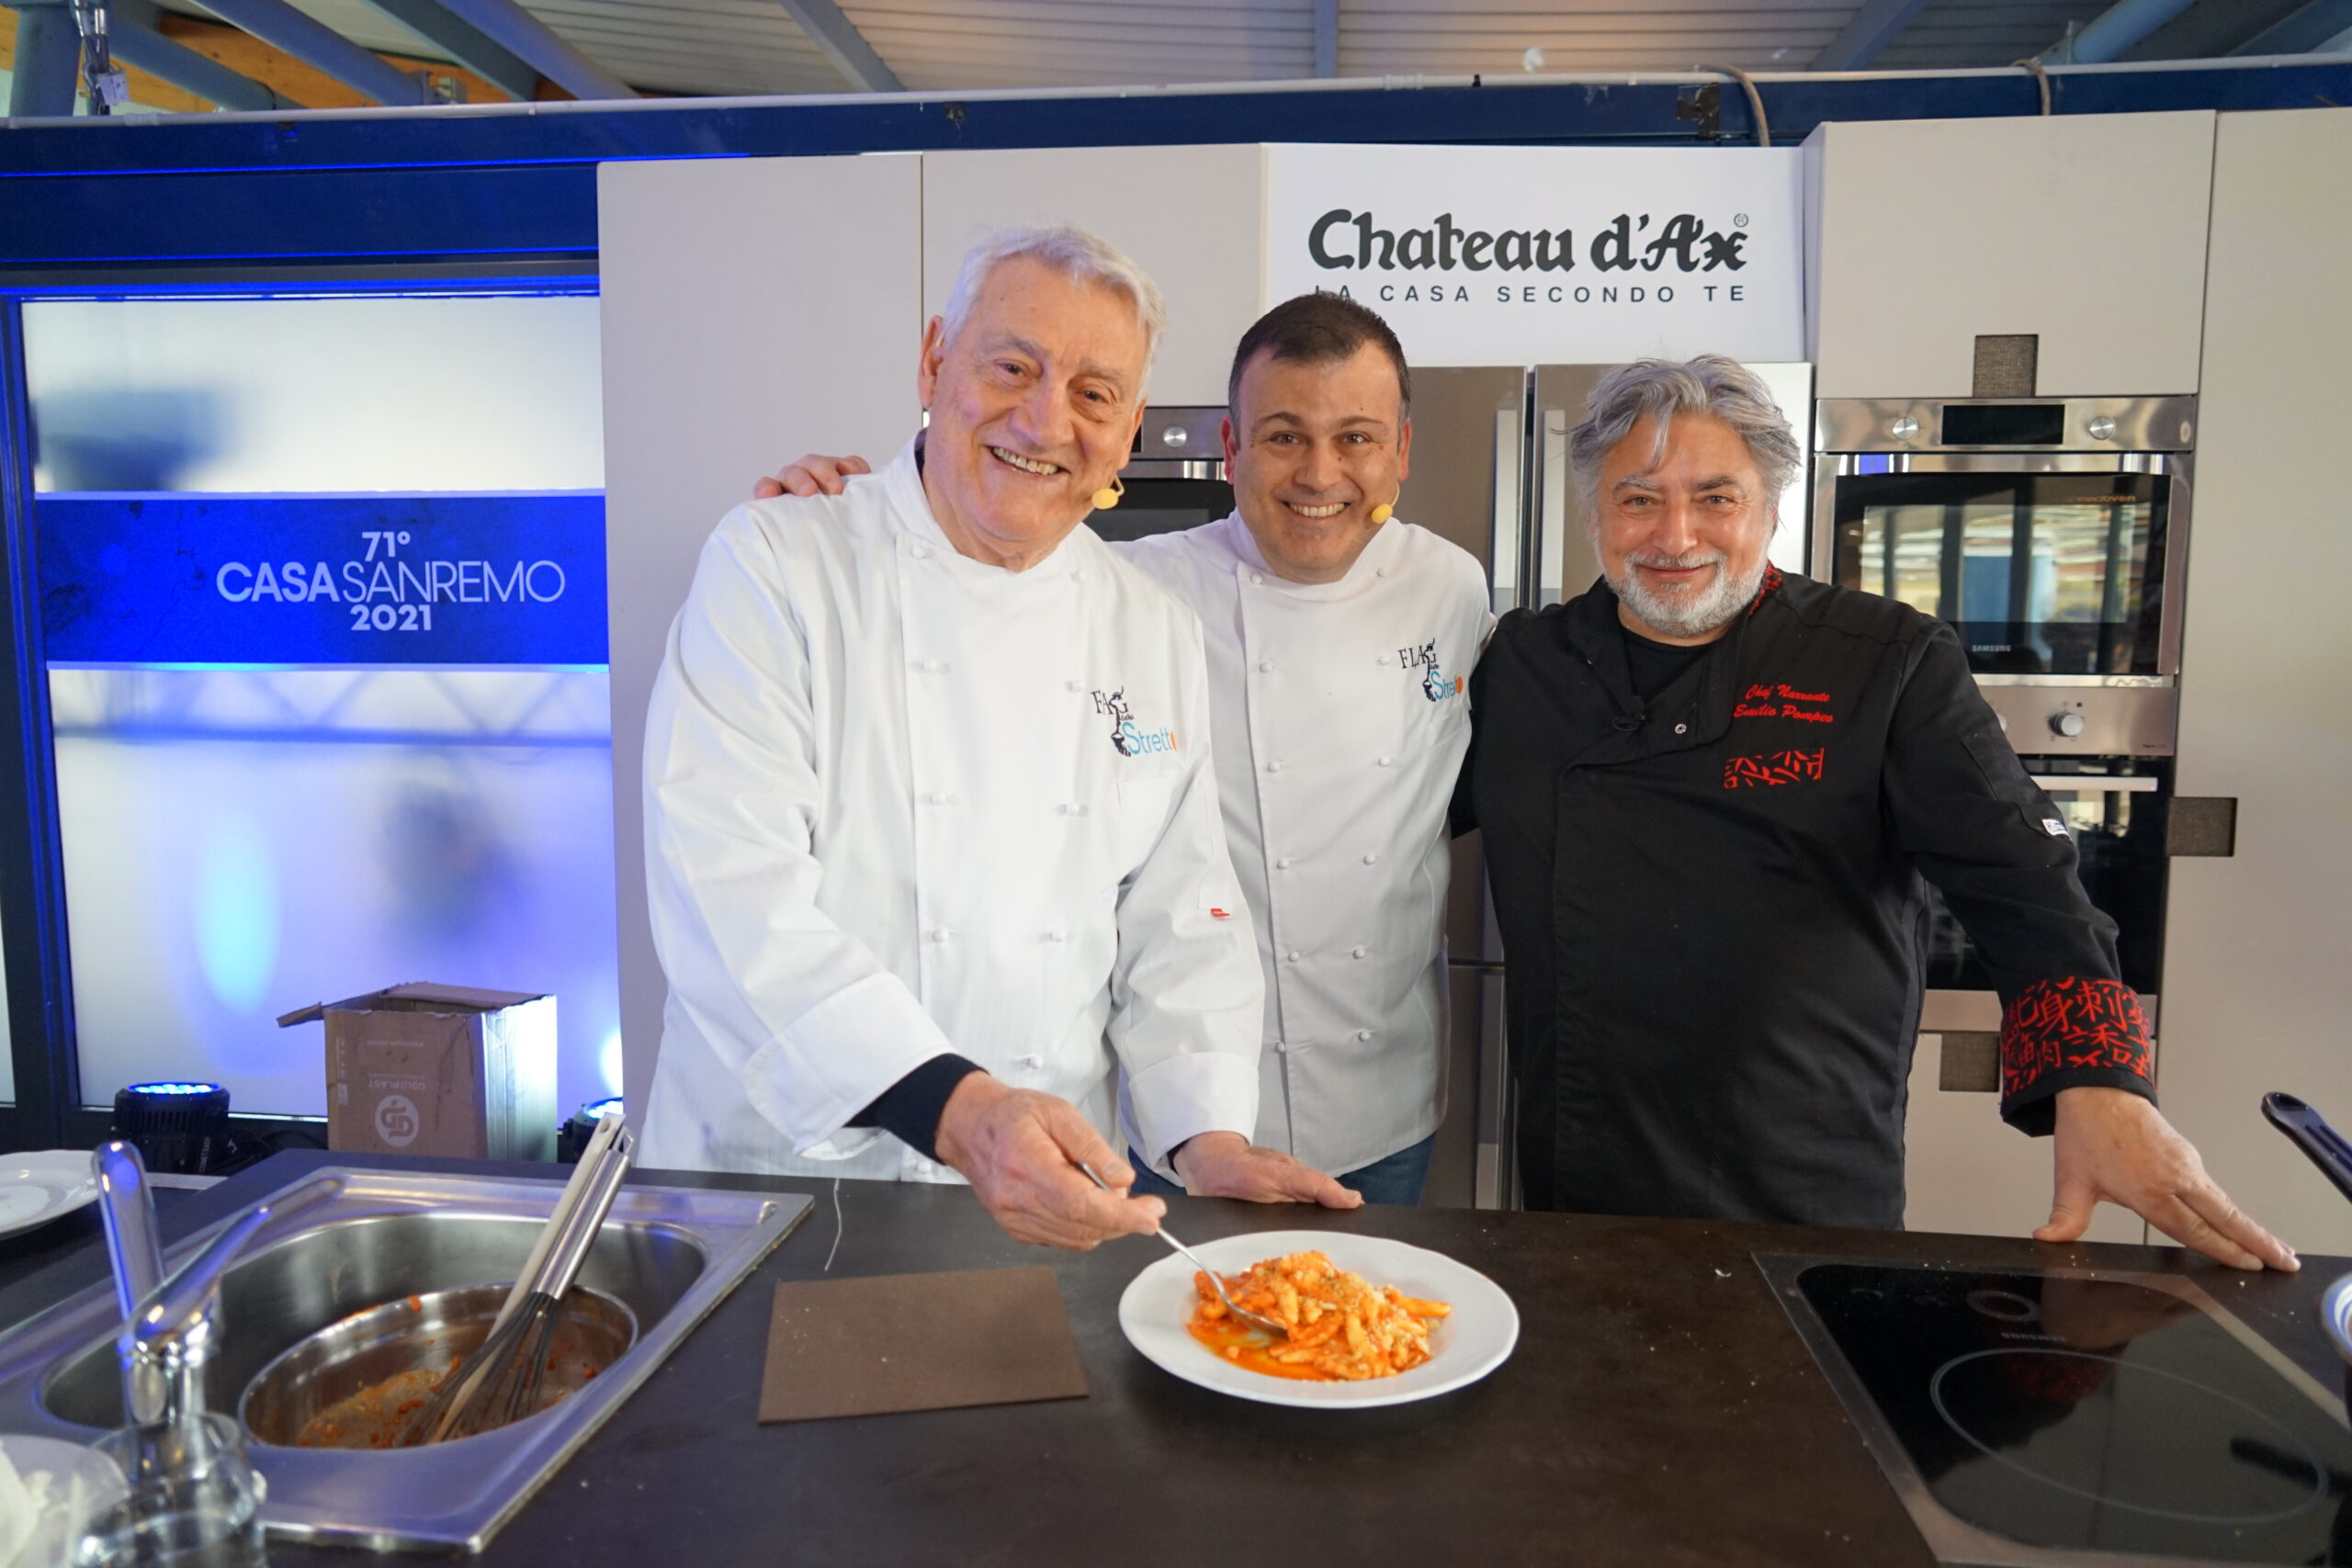 Il maestro orafo Gerardo Saccon con gli chef Fabio Campoli e Pucci